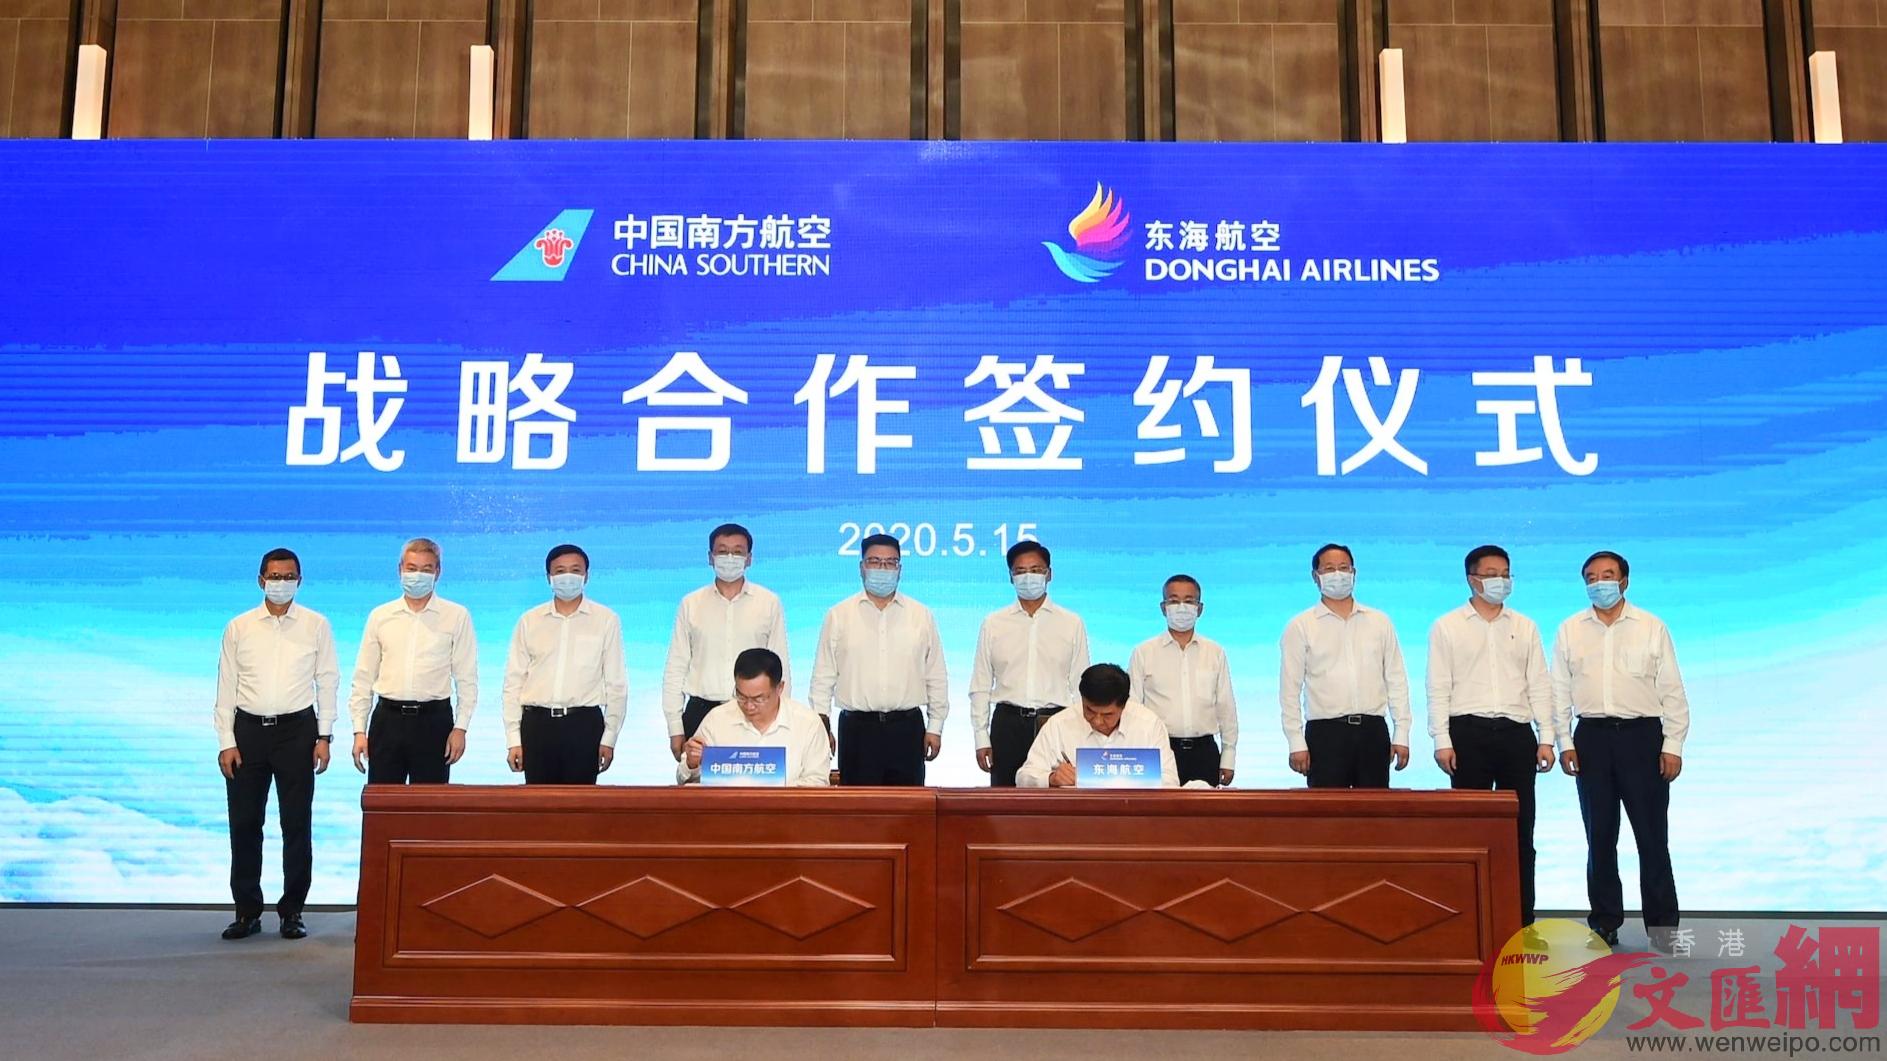 東海航空與南方航空在深圳簽署戰略合作框架協議C胡永愛攝